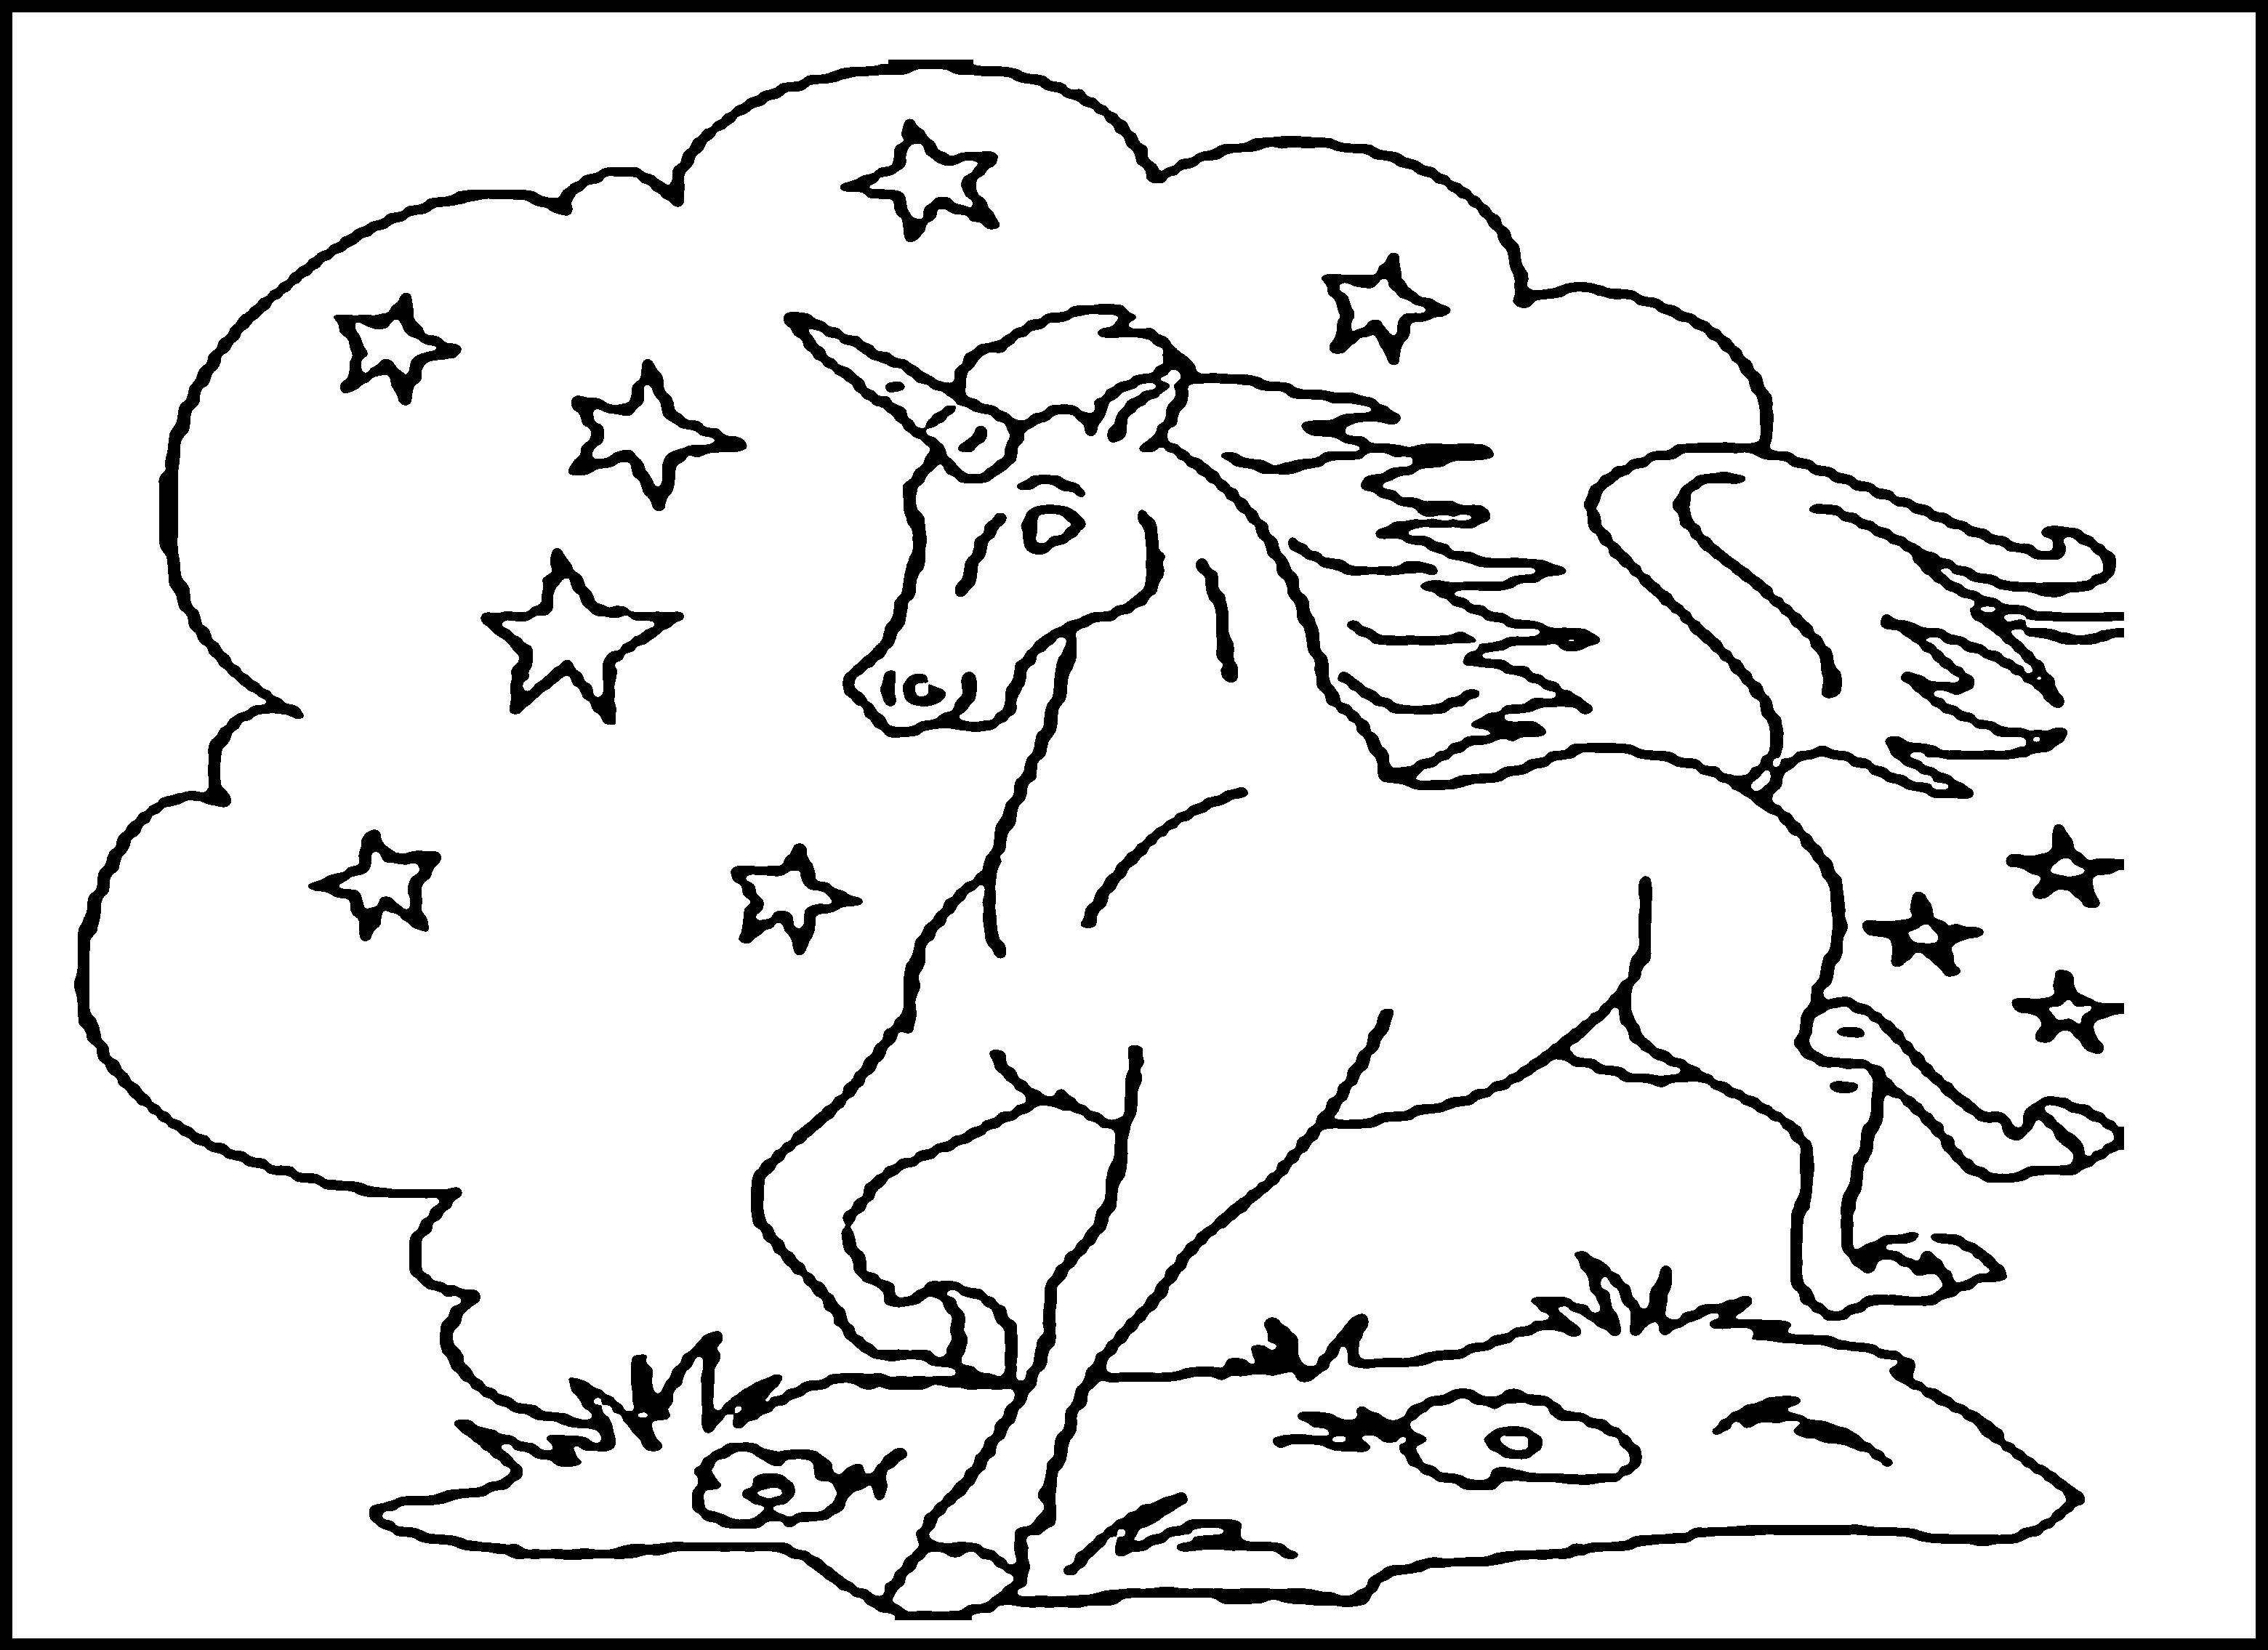 Опис: розмальовки  Єдиноріг в нічному небі. Категорія: Тварини. Теги:  Тварини, єдиноріг.